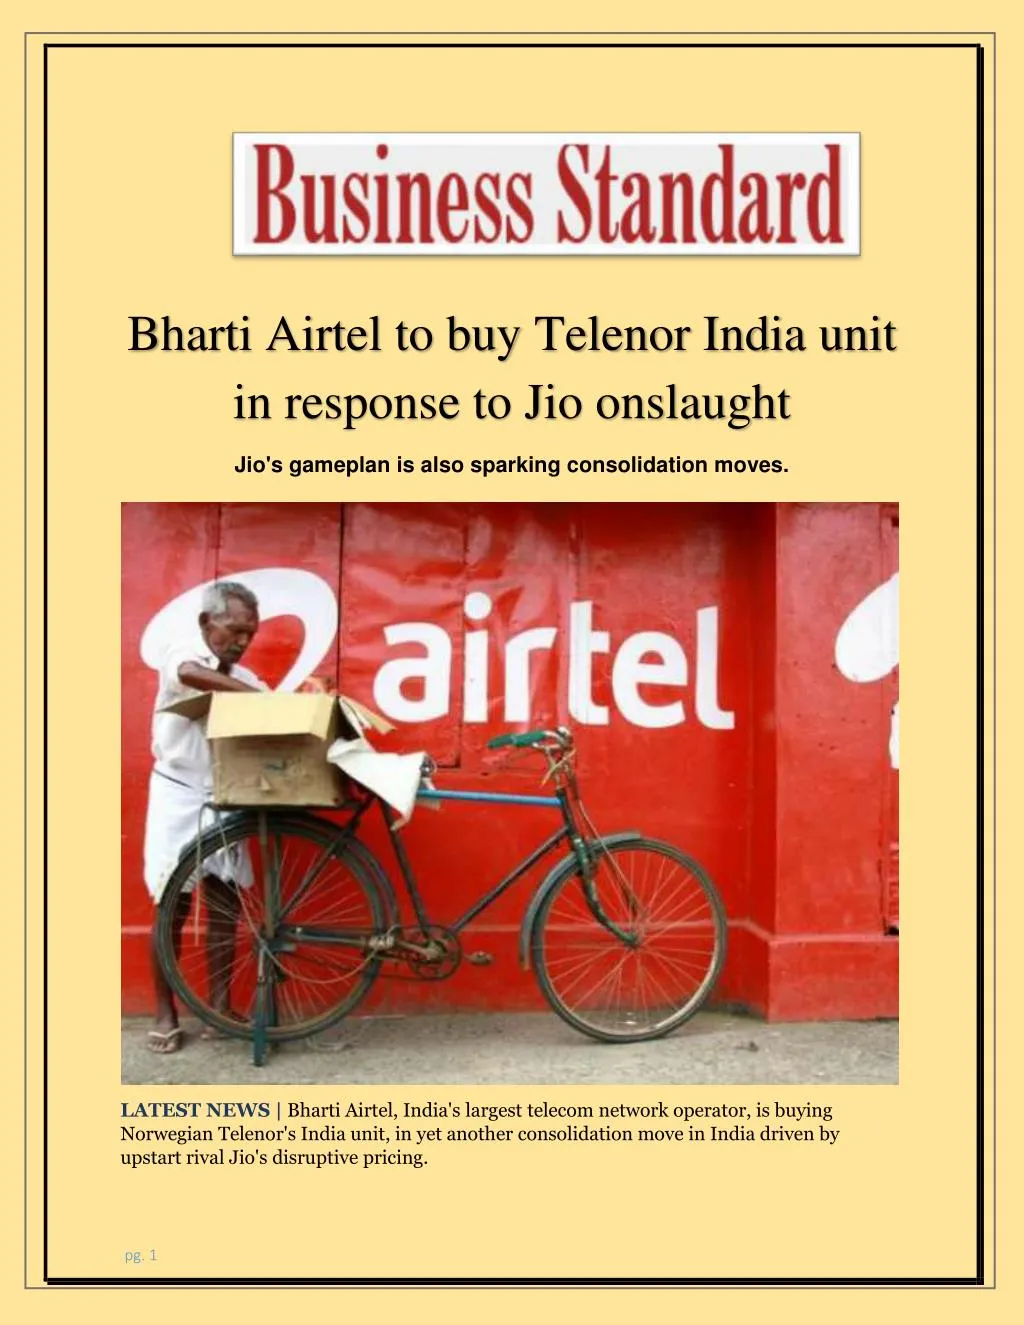 bharti airtel to buy telenor india unit